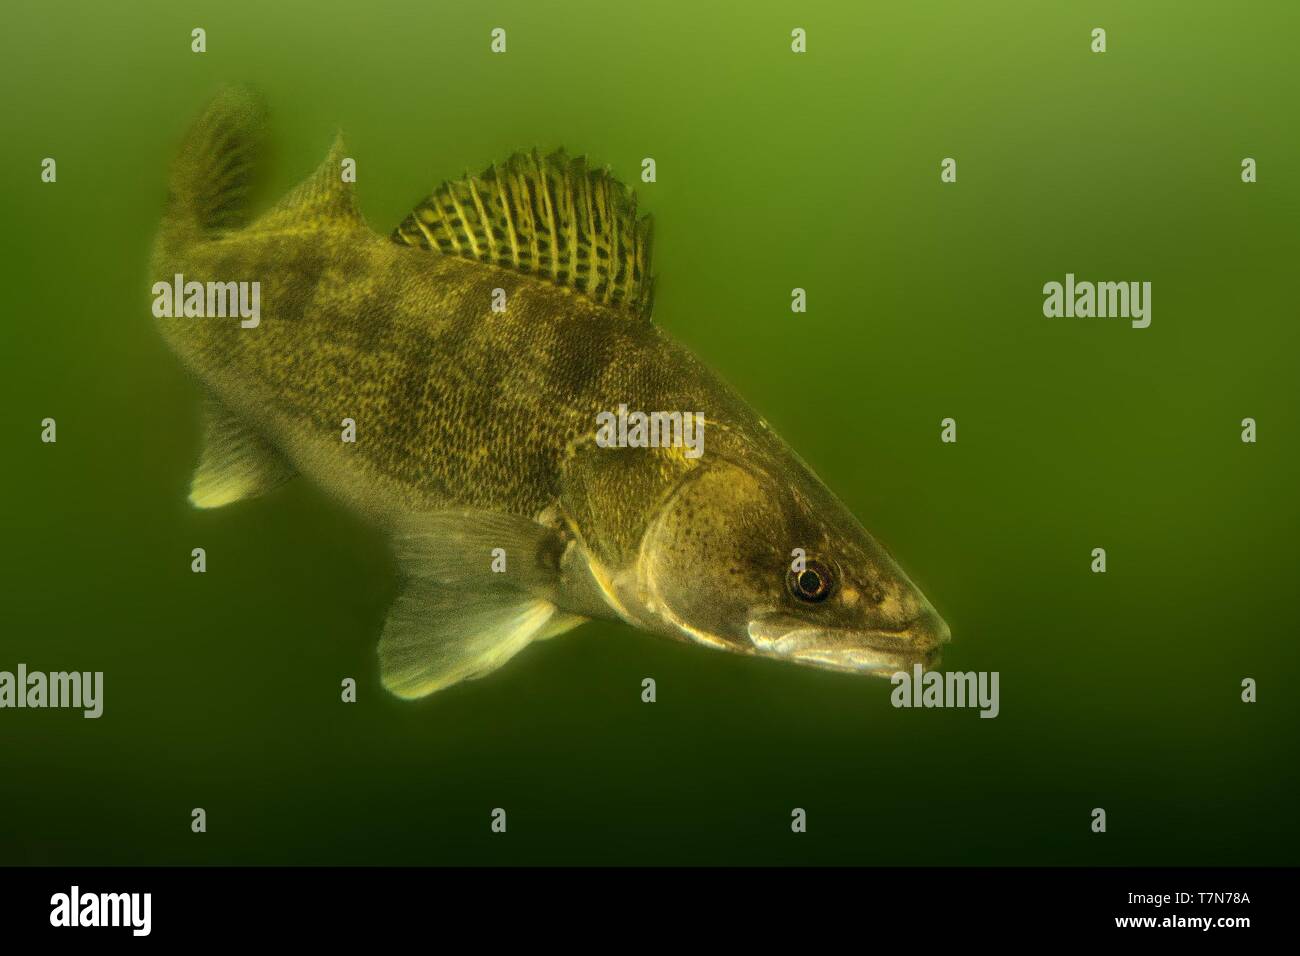 Zander (Sander lucioperca) unter Wasser. Fleisch fressende Fische mit markierten Flossen. unter Wasser erfasst. Grüner Hintergrund - unten dunkler als auf. Stockfoto